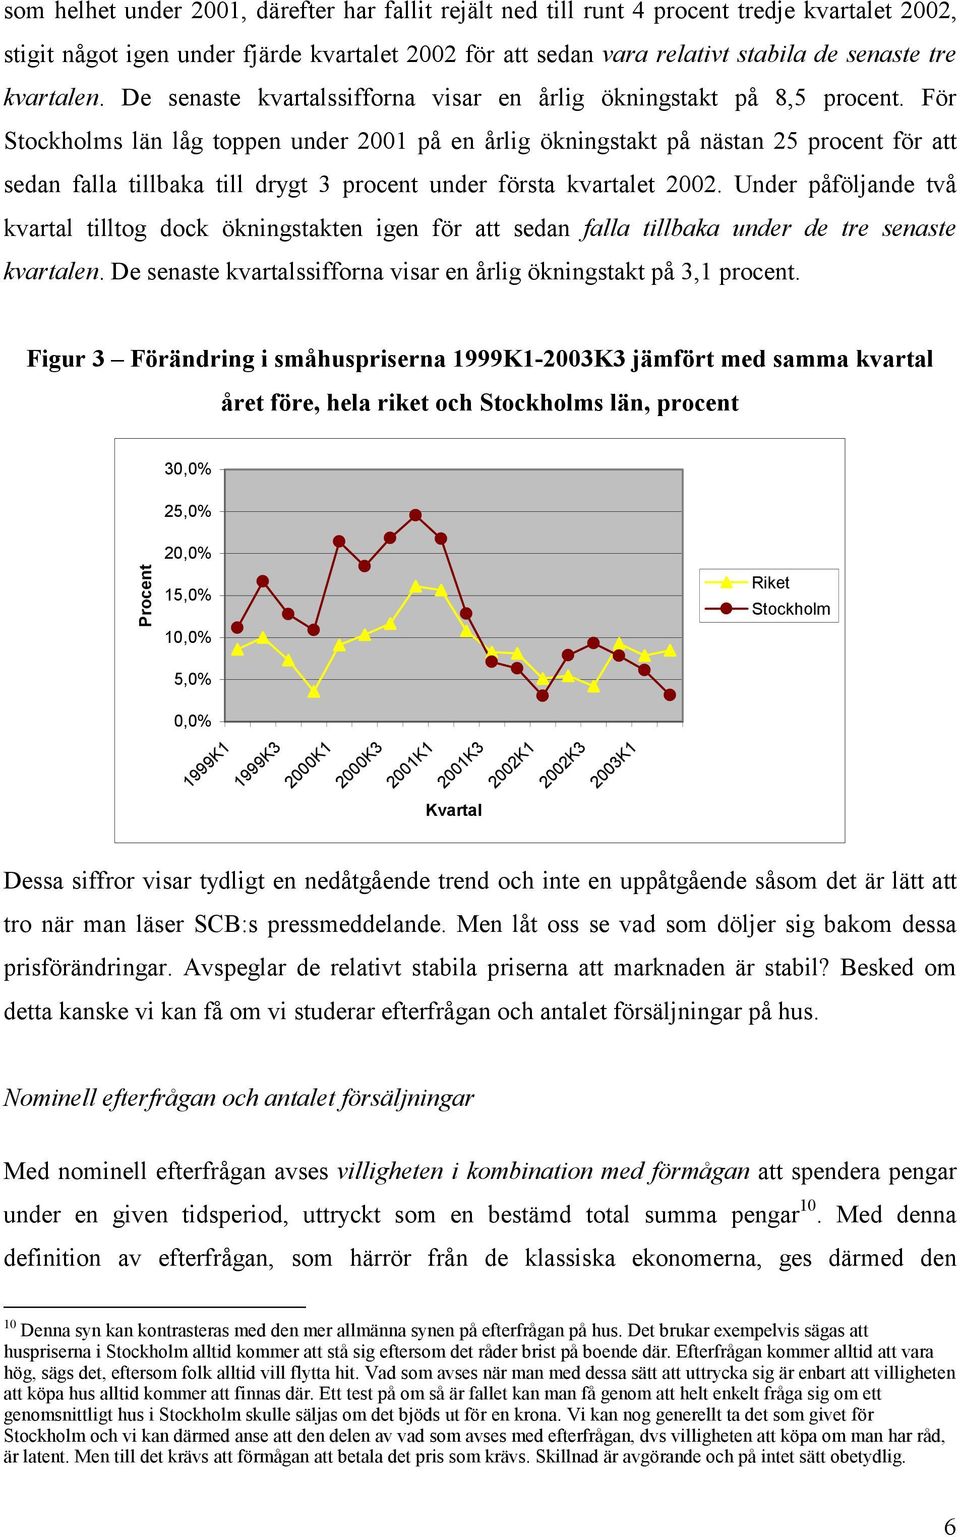 För Stockholms län låg toppen under 2001 på en årlig ökningstakt på nästan 25 procent för att sedan falla tillbaka till drygt 3 procent under första kvartalet 2002.